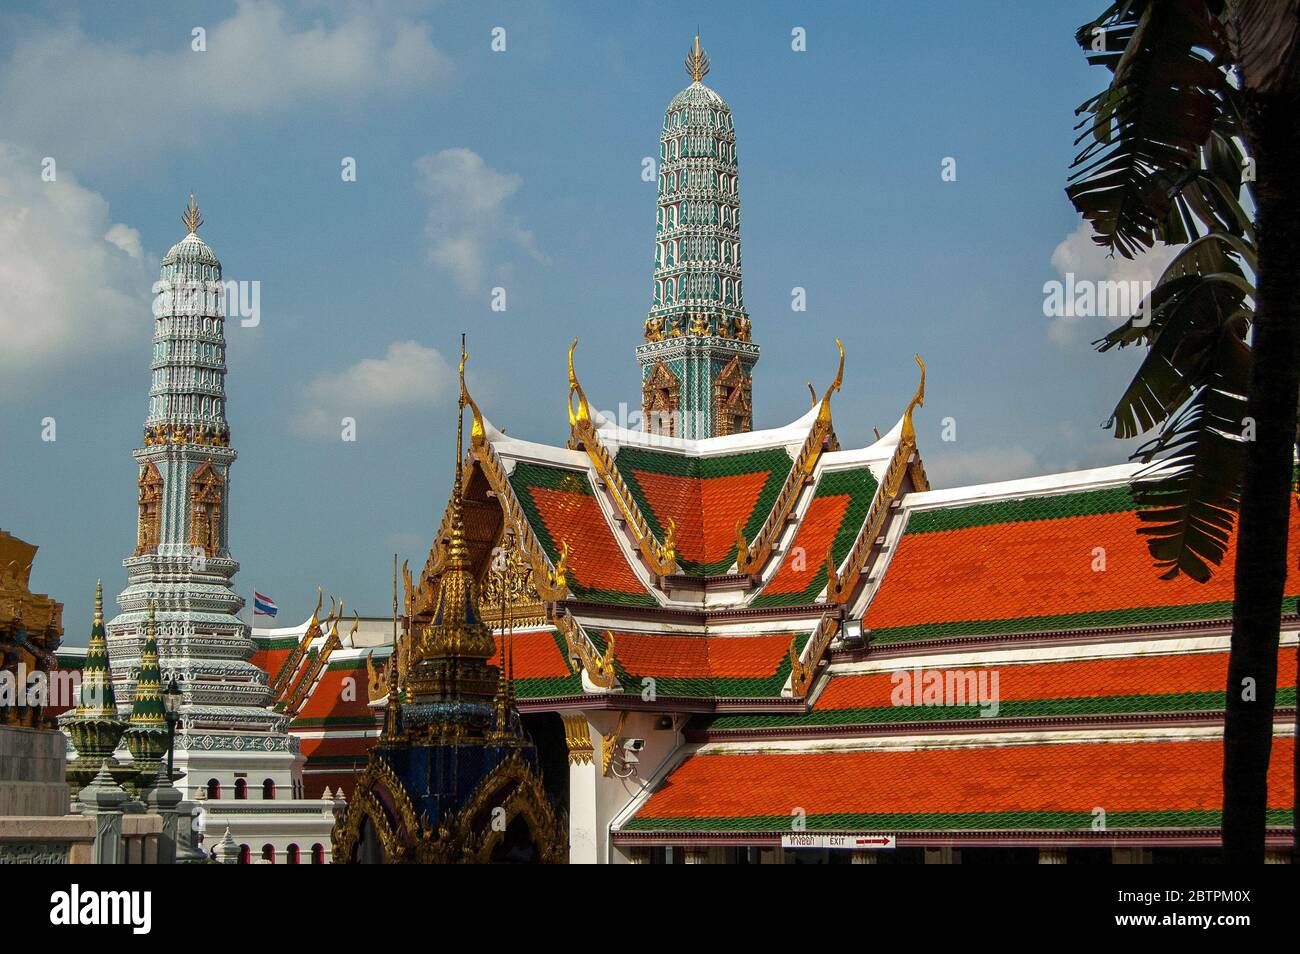 Phra Maha Montian Group ist die großartige Residenz, die aus 7 Verbindungsgebäuden im Grand Palace Komplex in Bangkok, Thailand besteht. Stockfoto